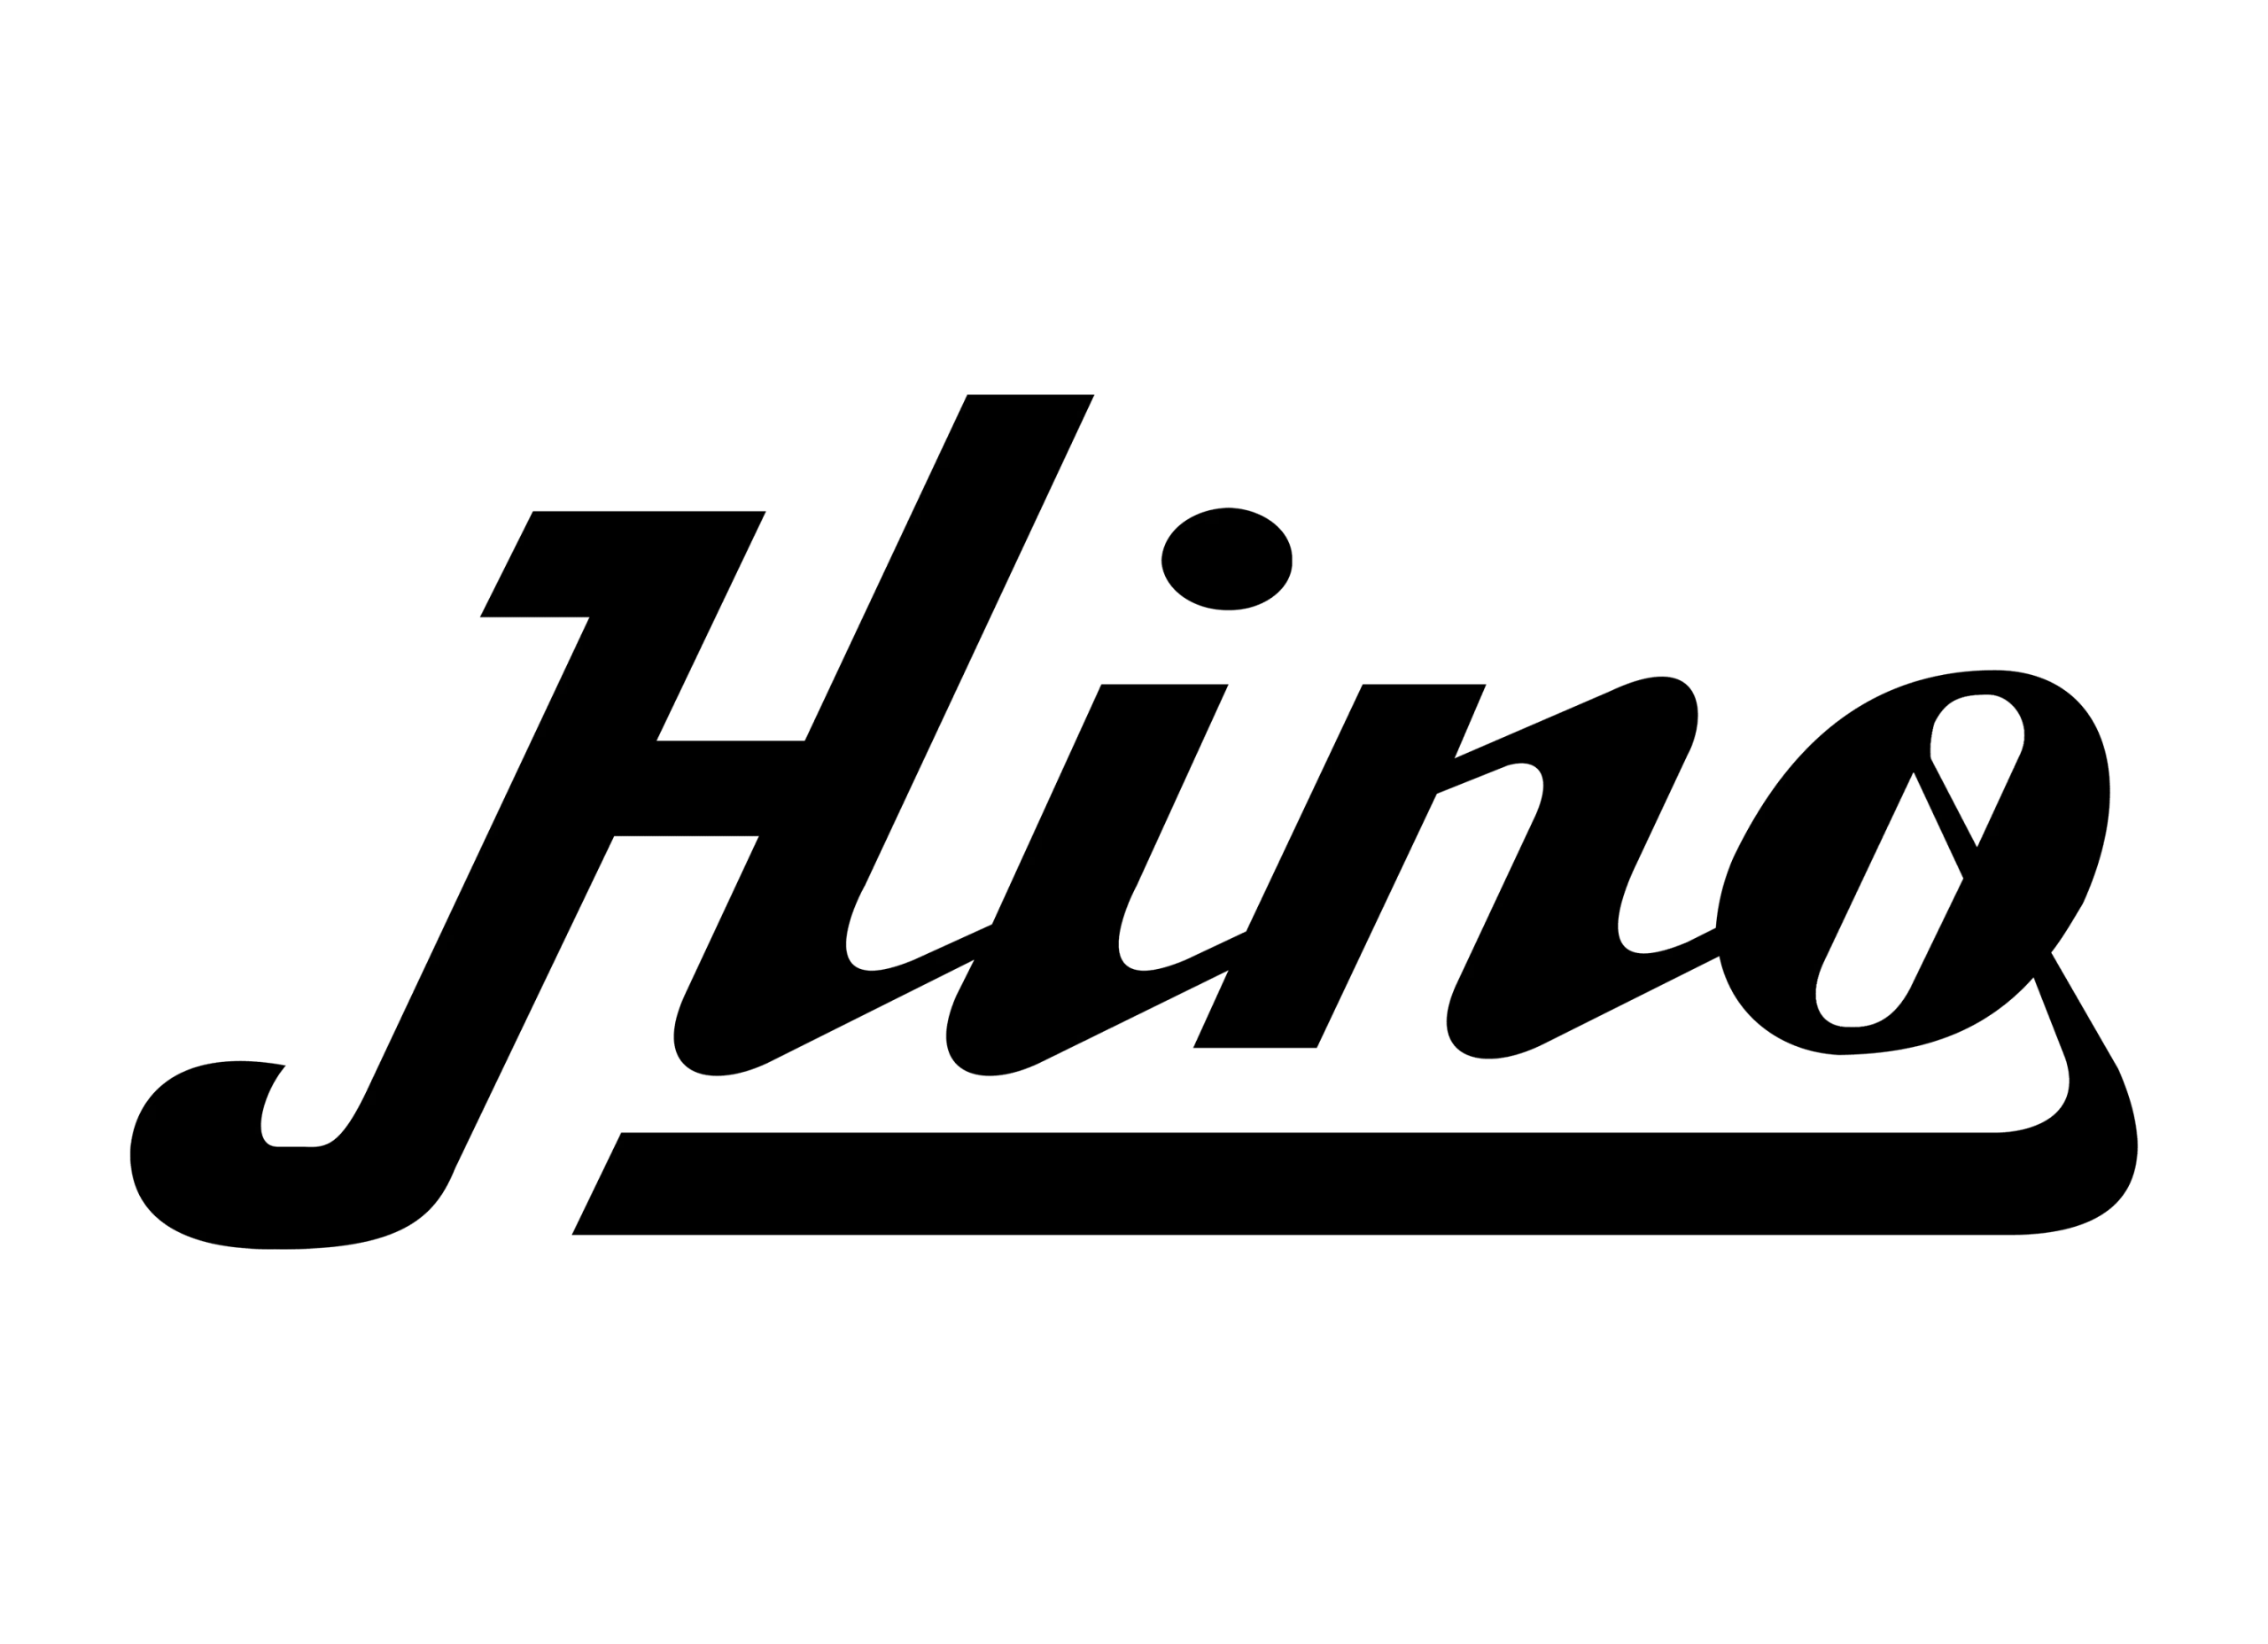 Hino logo 1917-1994